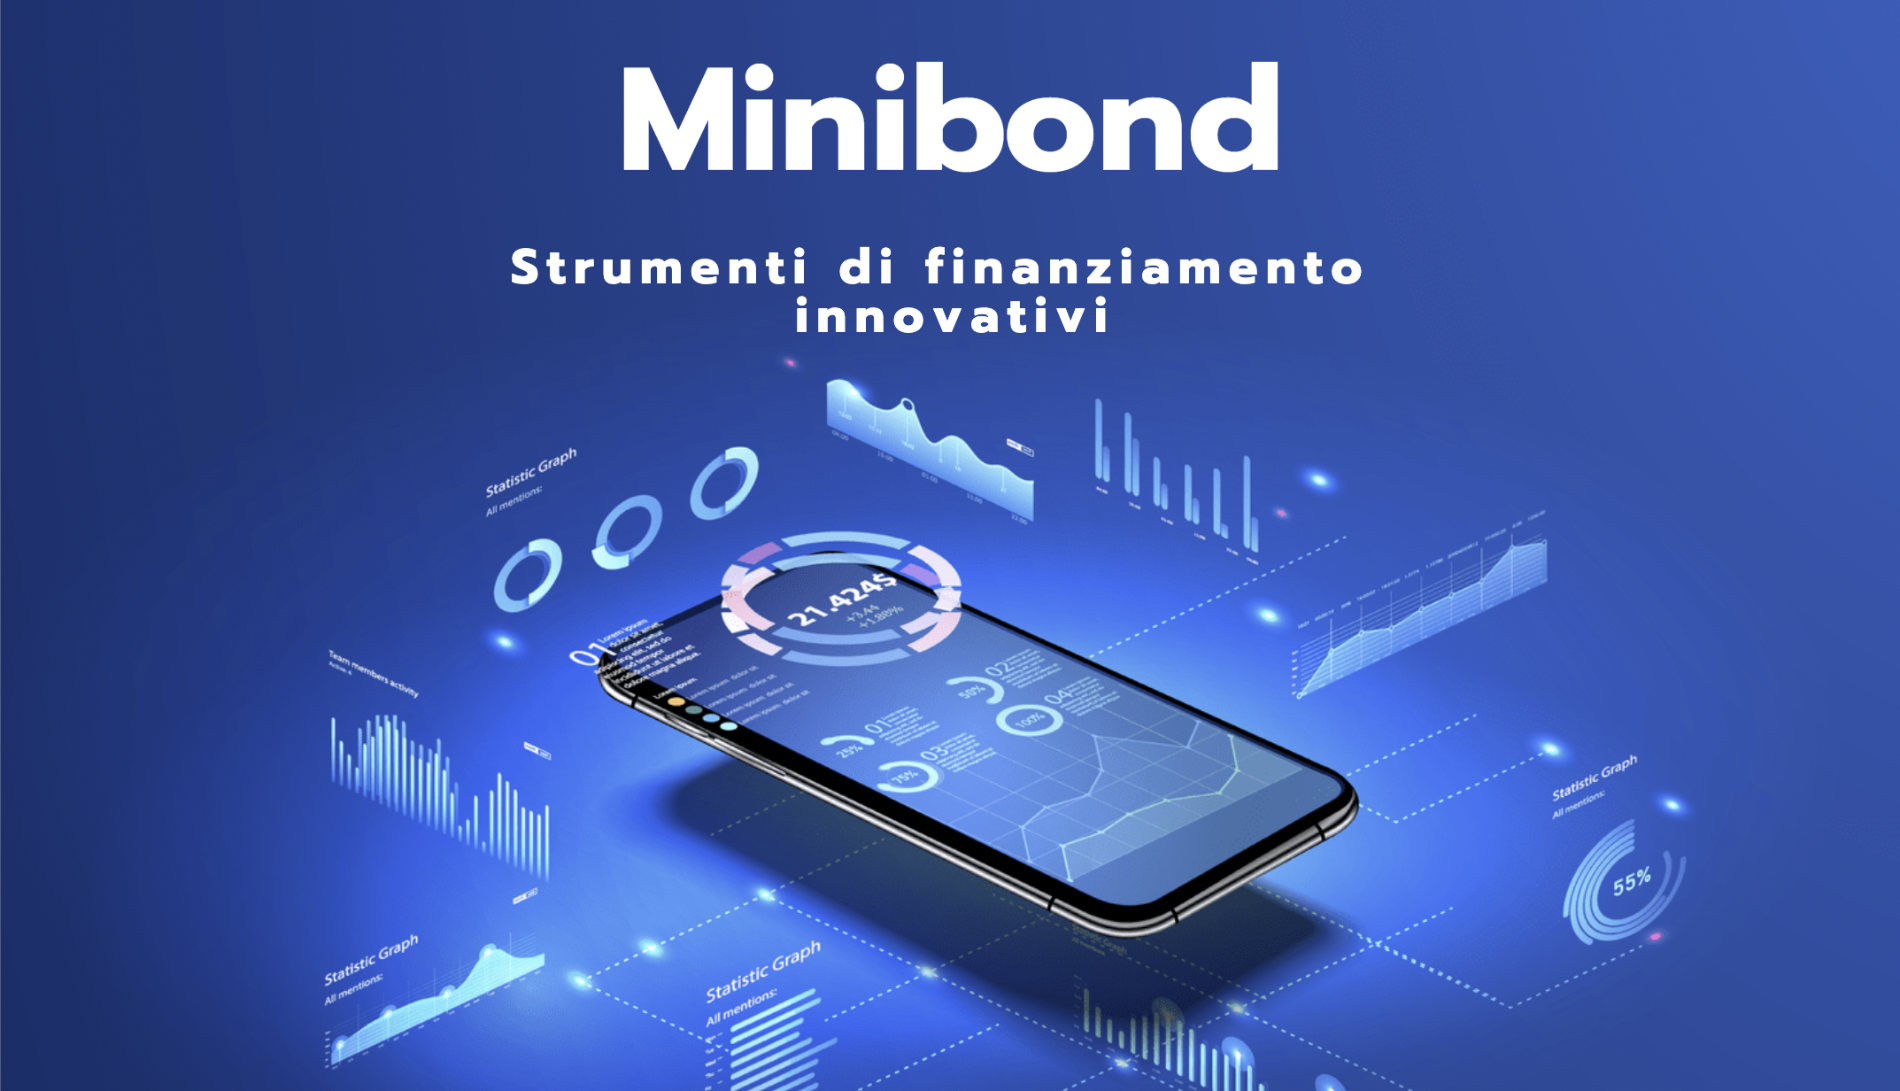 MINIBOND strumenti di finanziamento innovativi